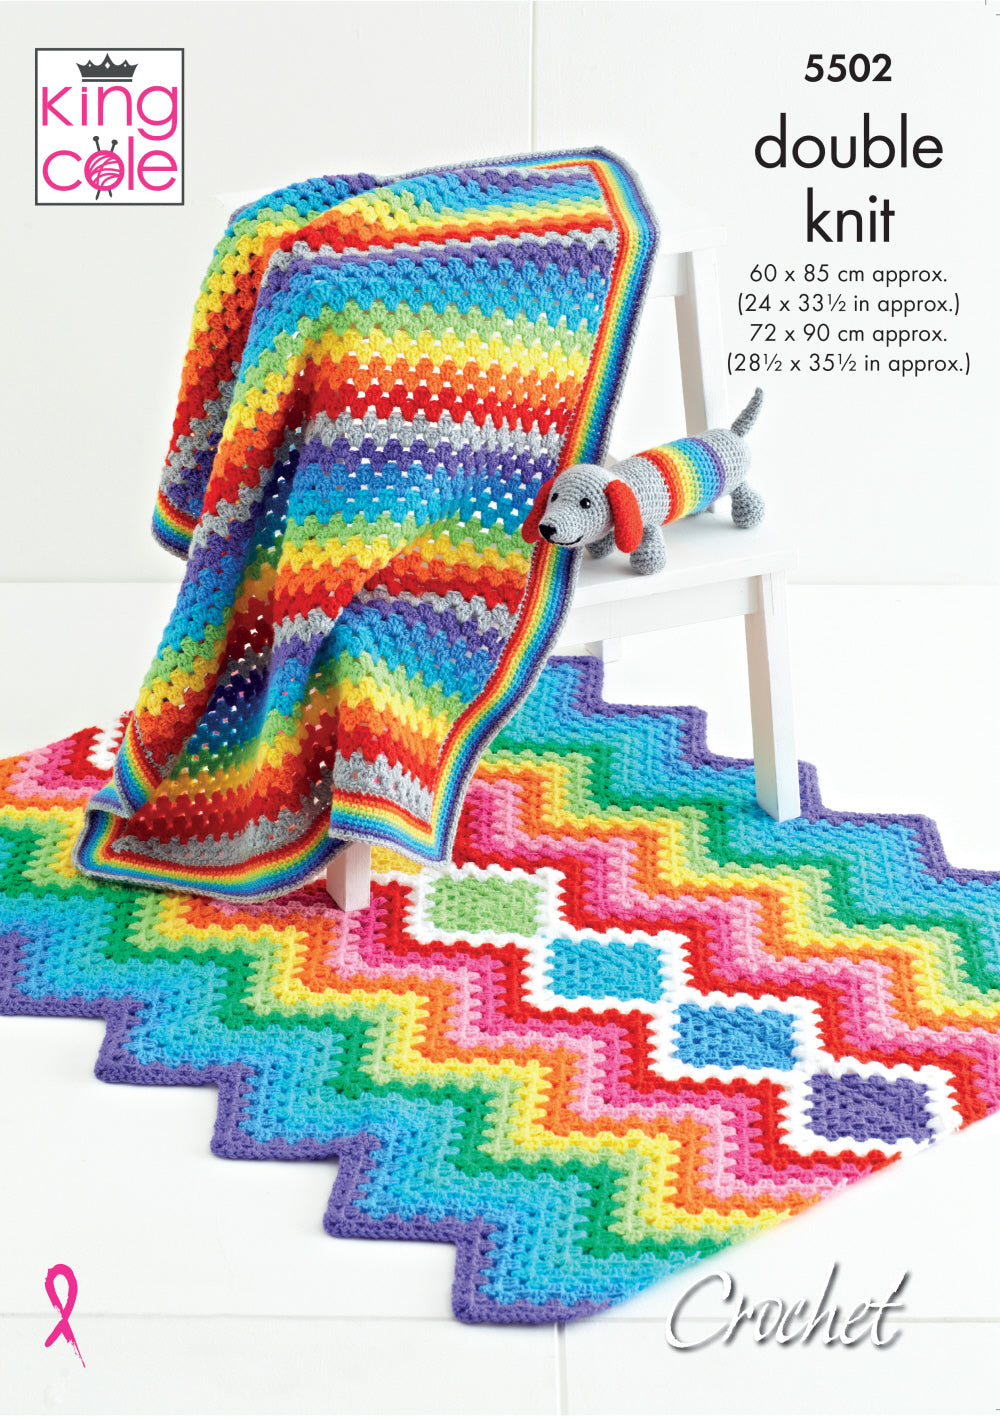 King Cole 5502 DK Rainbow Baby Blanket Toy Crochet Pattern